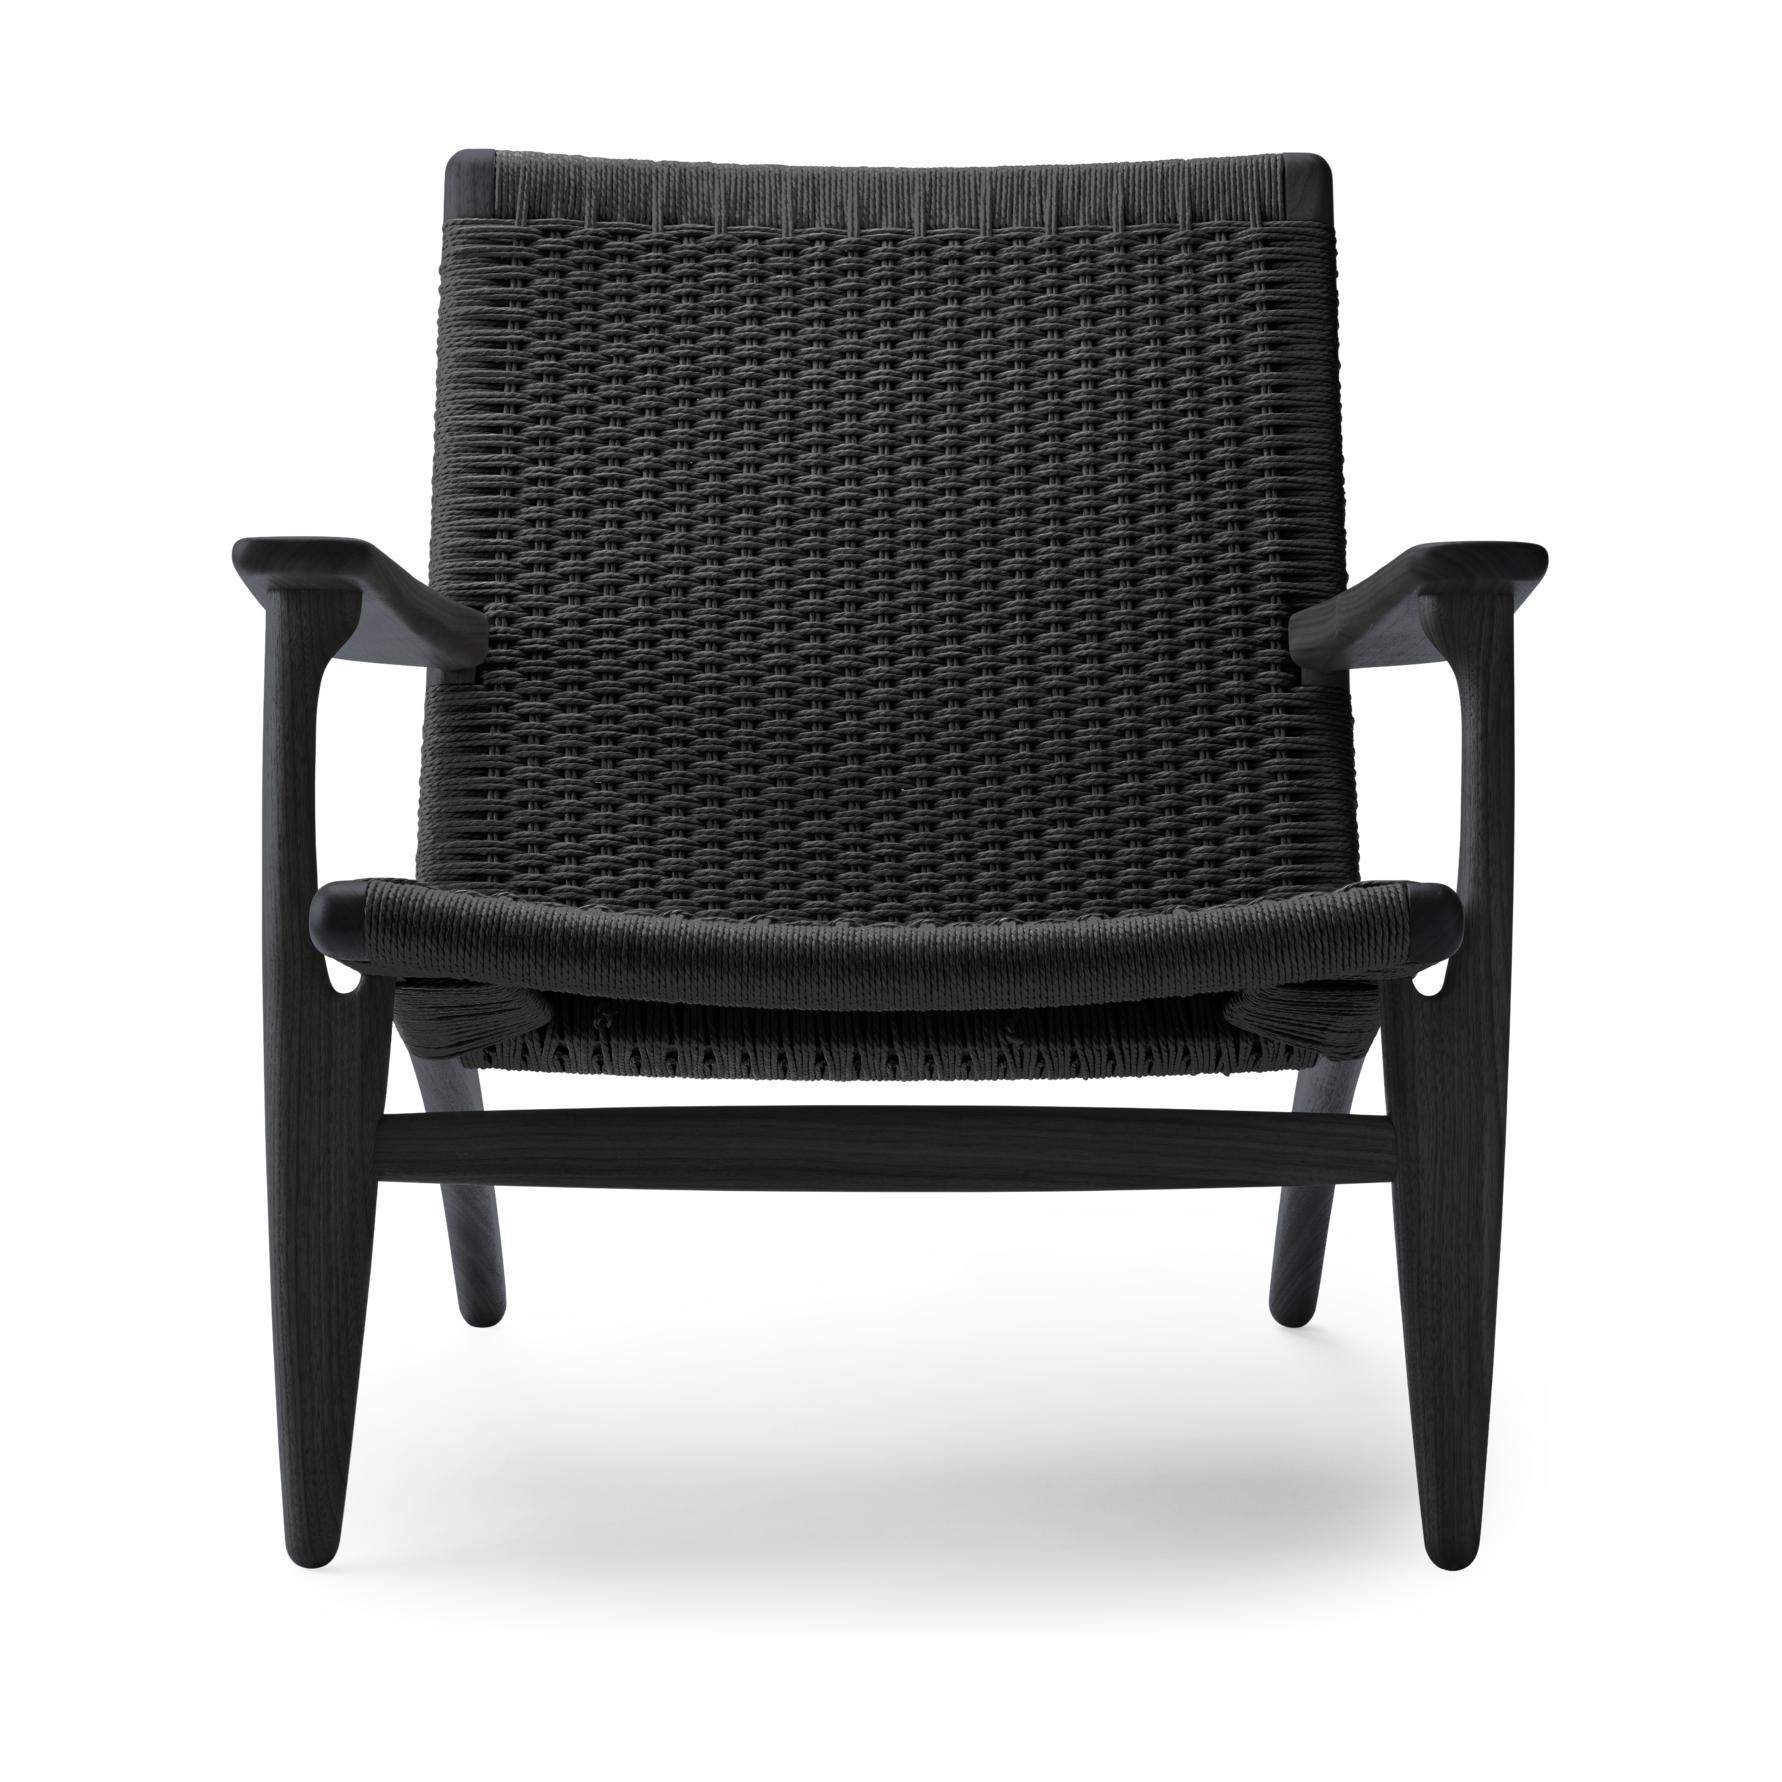 Lounge židle Carl Hansen CH25, barevný dub/černý papírový šňůra